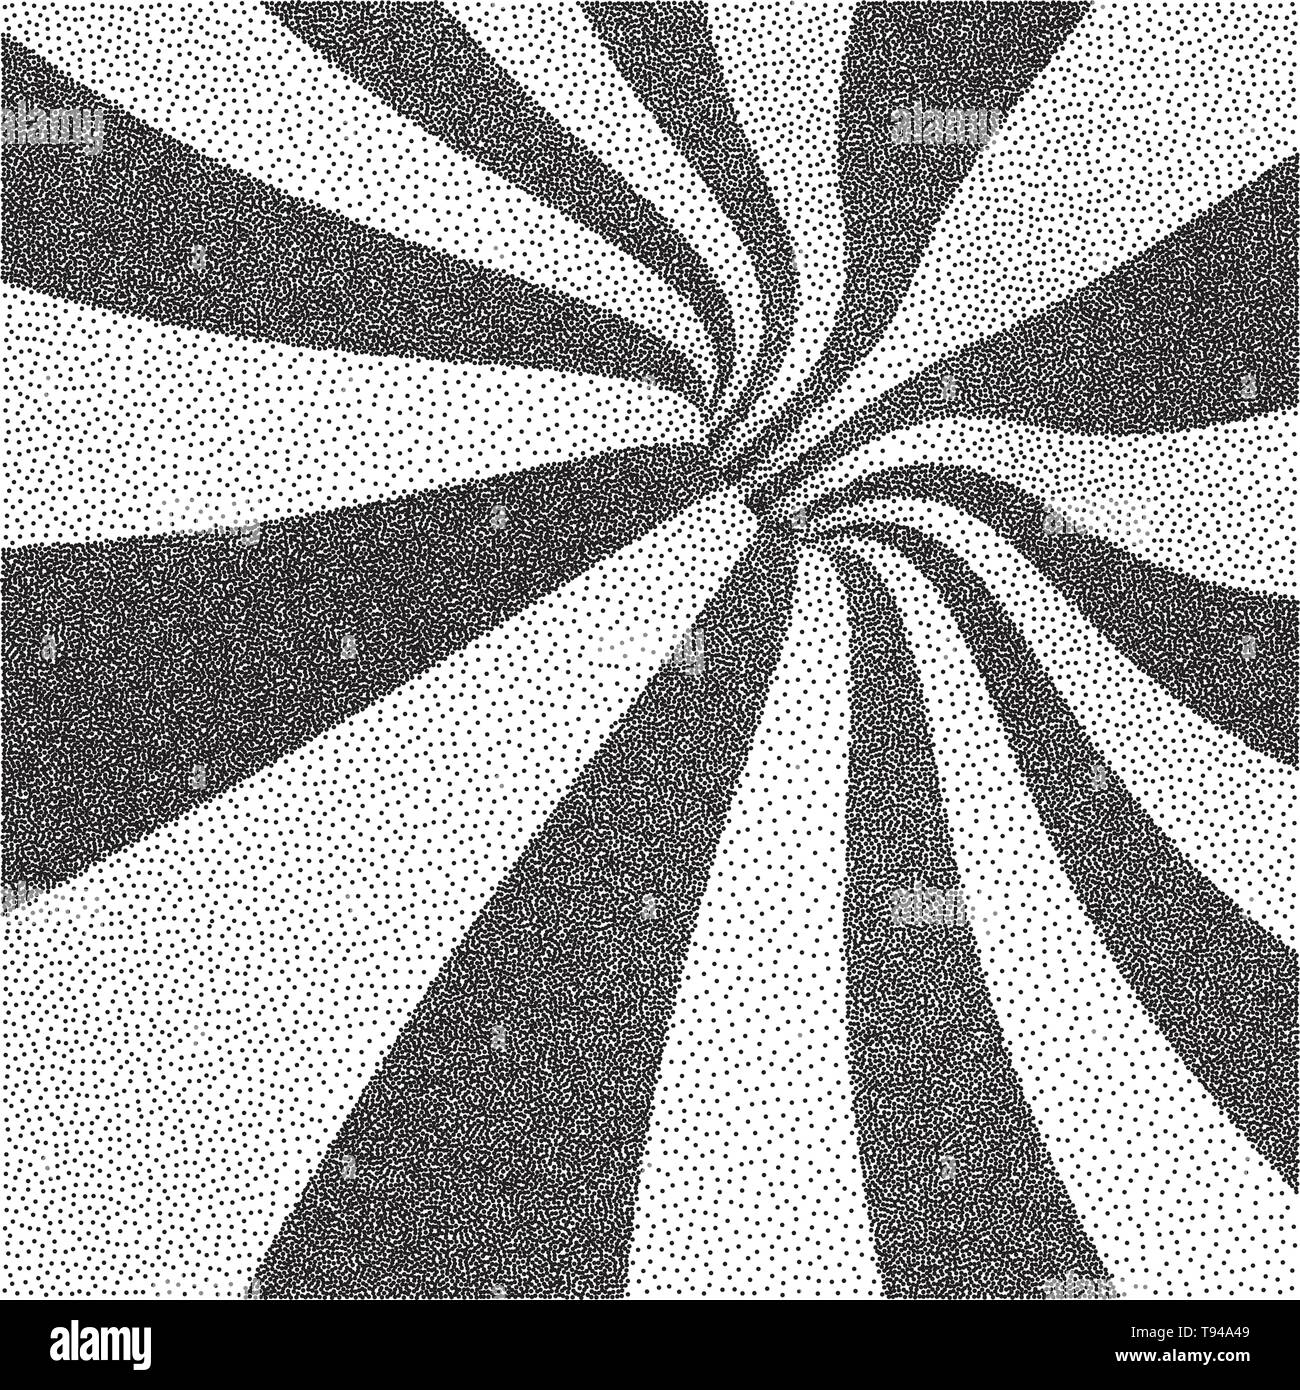 Abstrakte swirl Hintergrund. Schwarze und weiße körnig dotwork Design. Pointillismus Muster mit optischen Täuschung. Gepunktete Vector Illustration. Stock Vektor